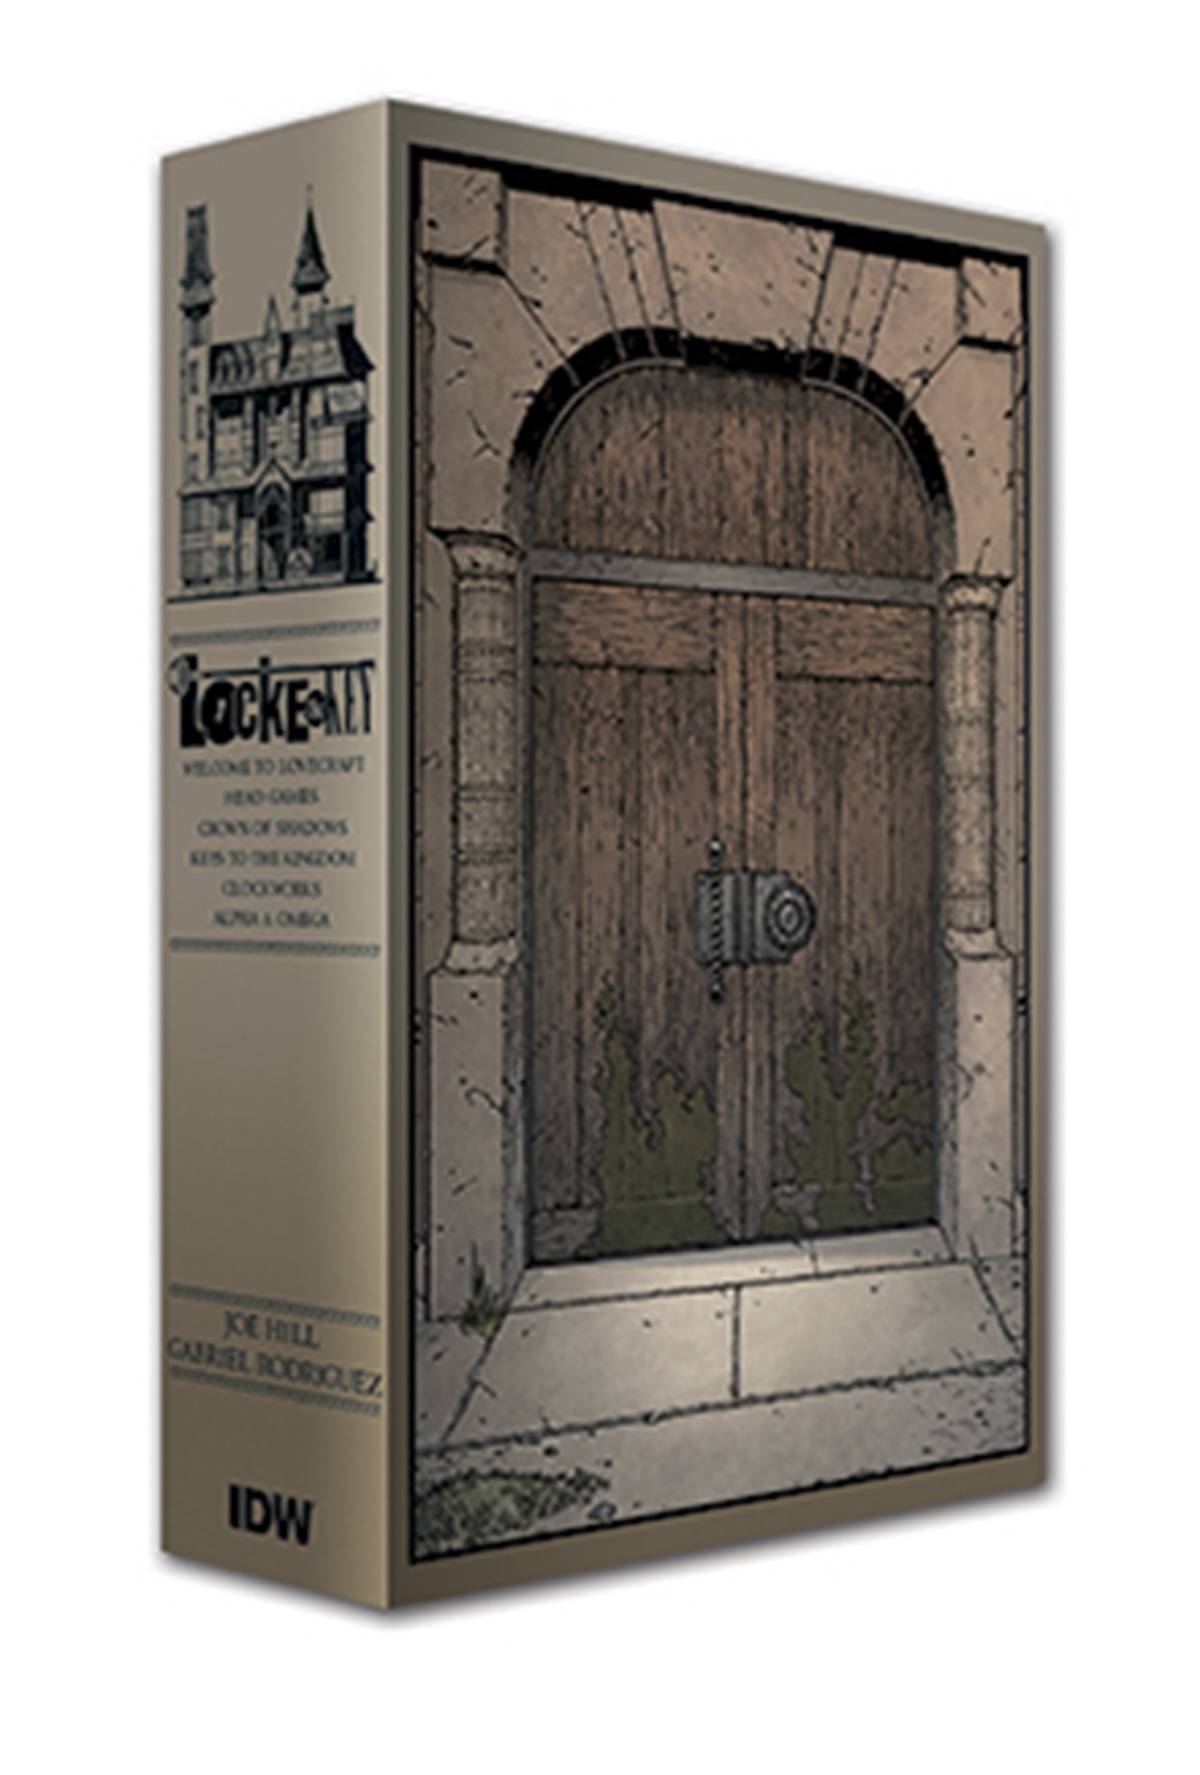 Locke & Key Graphic Novel Slipcase Set Holiday Edition